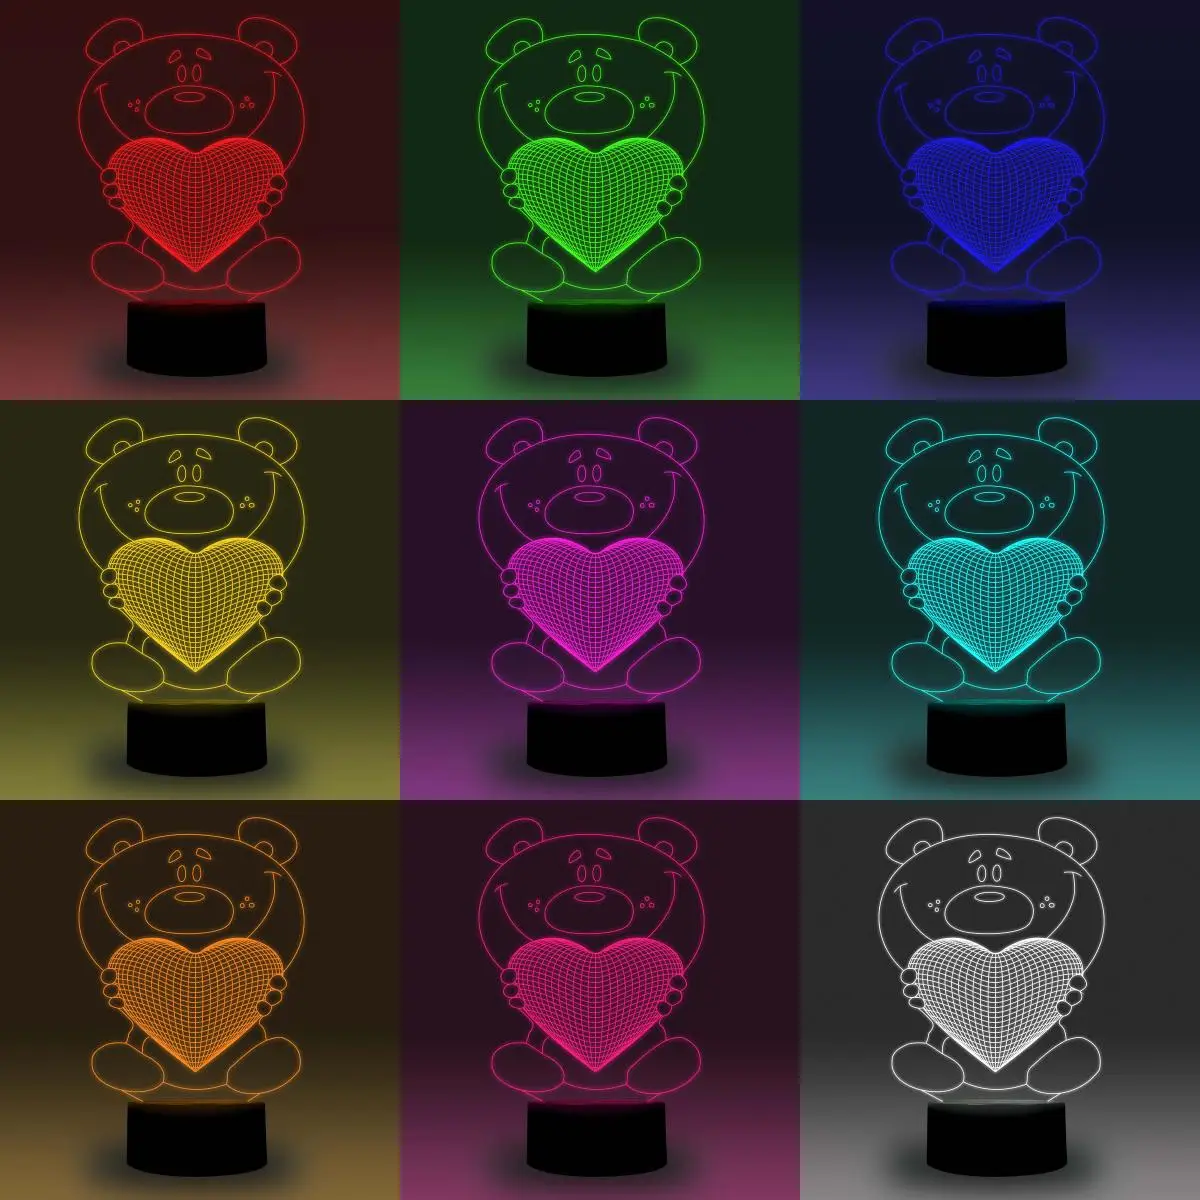 NiteApps 3D Забавный медведь с сердцем светодиодный ночник настольная иллюзия Лампа подарок на день рождения приложение/сенсорное управление